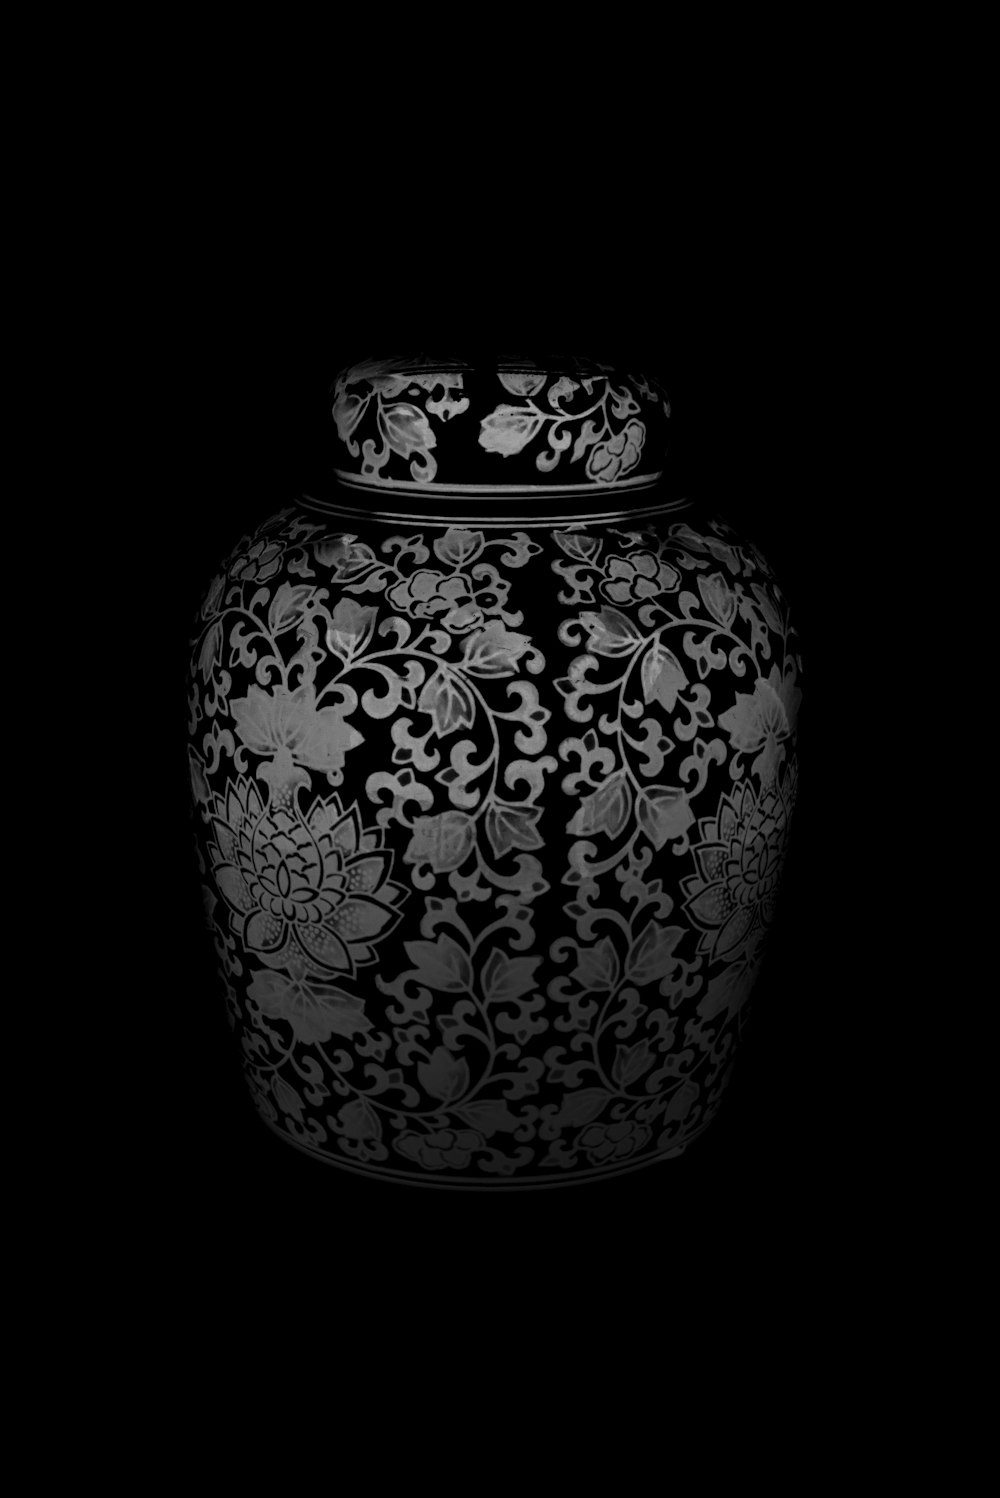 Une photo en noir et blanc d’un vase